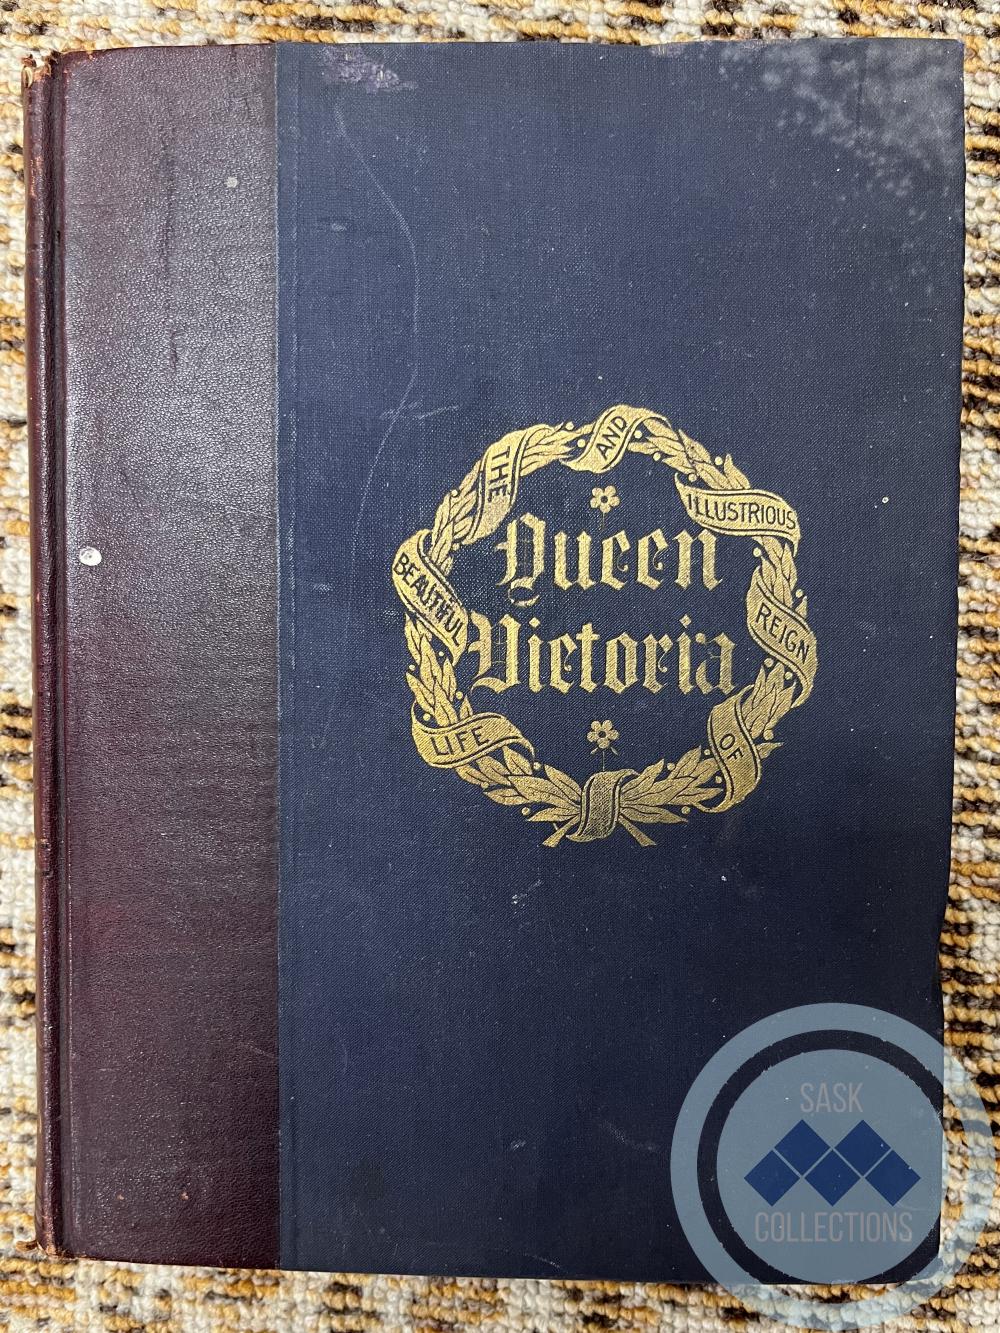 Book - Queen Victoria